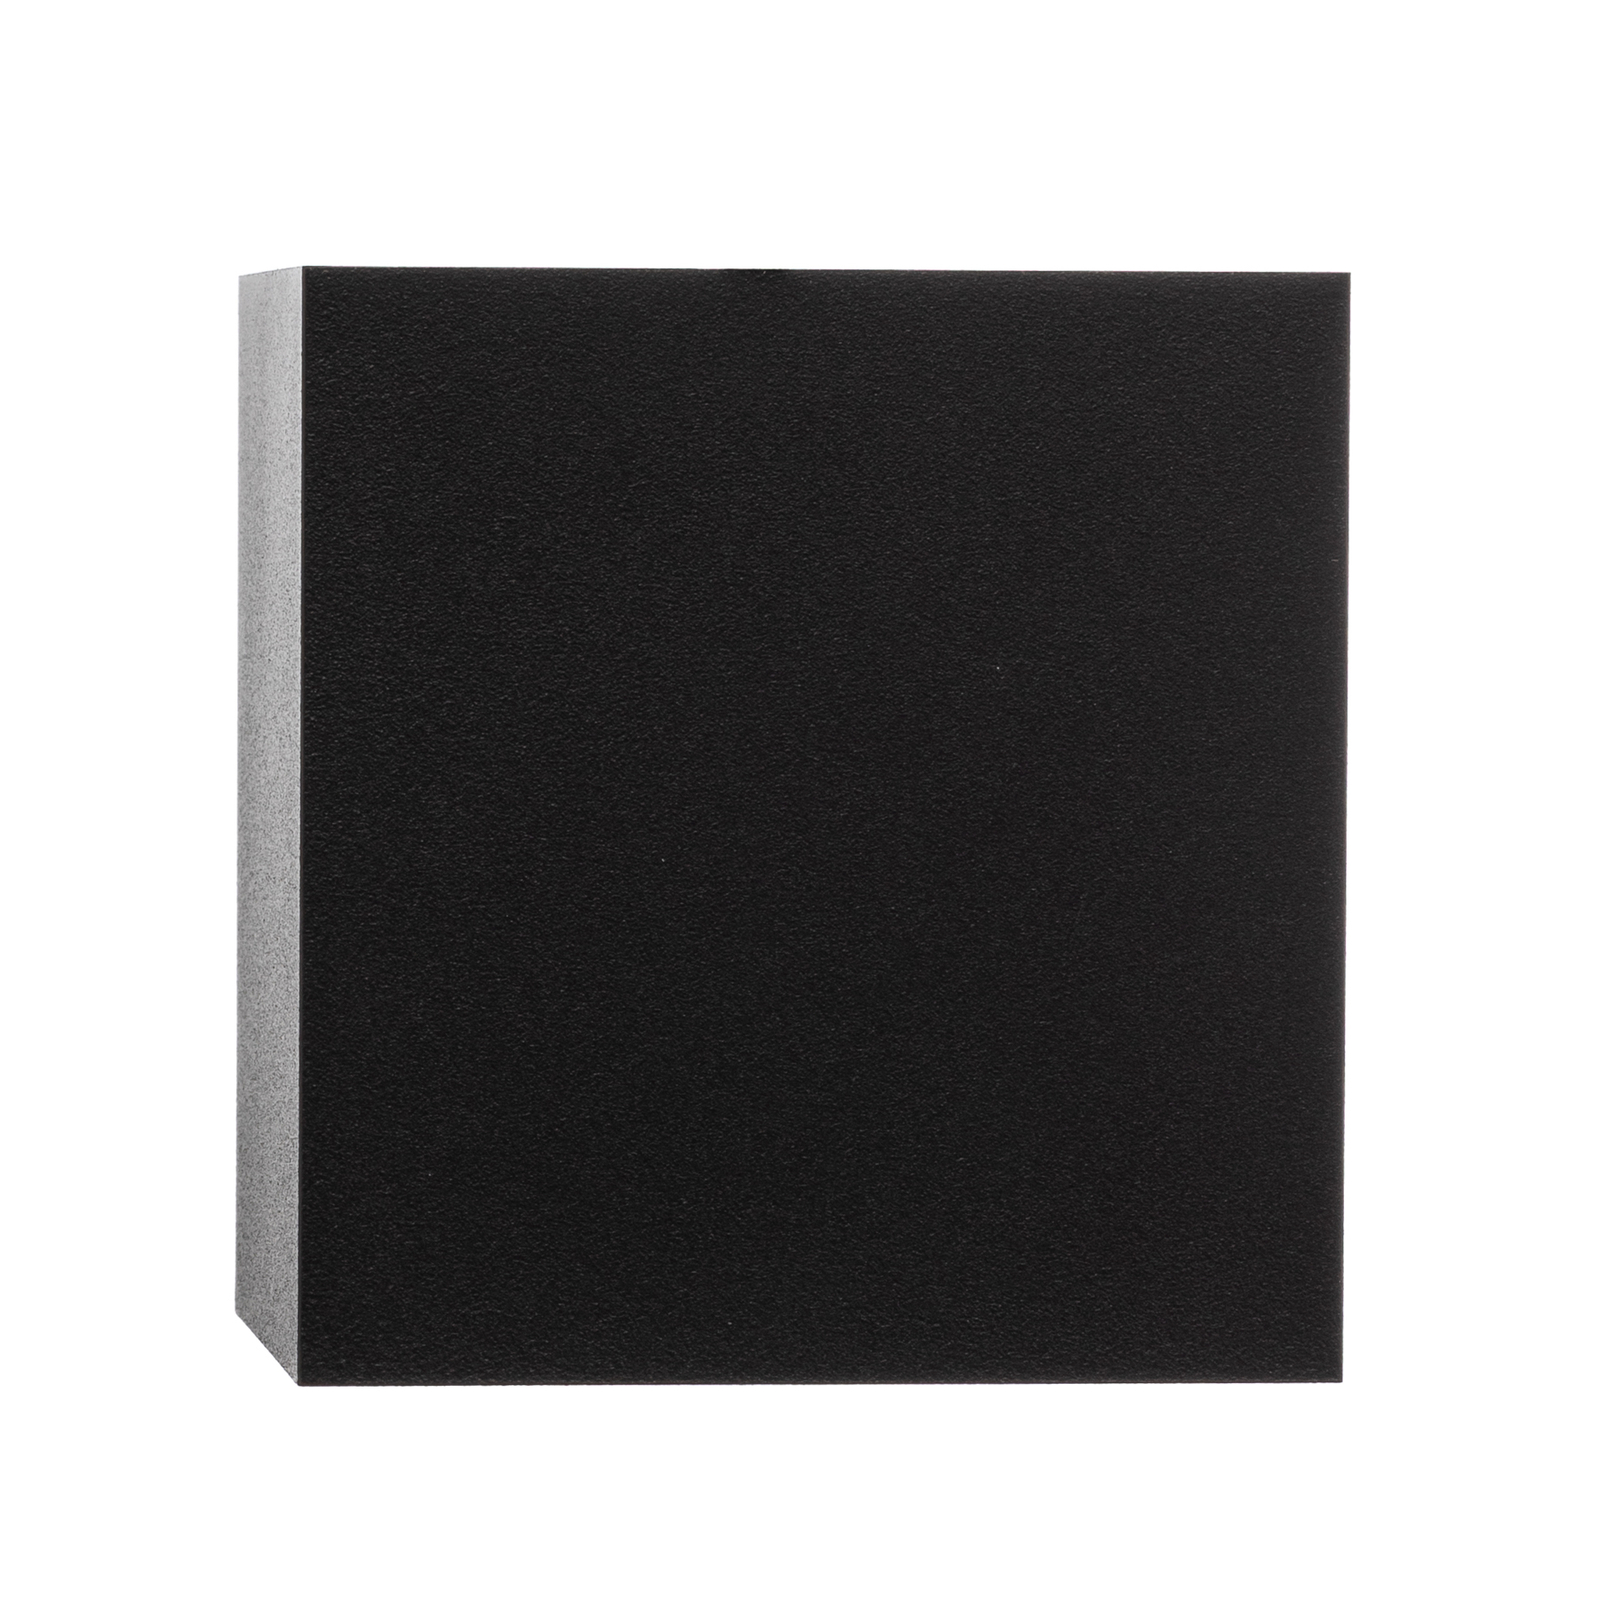 Downlight Cobble kvadratnog oblika, crna